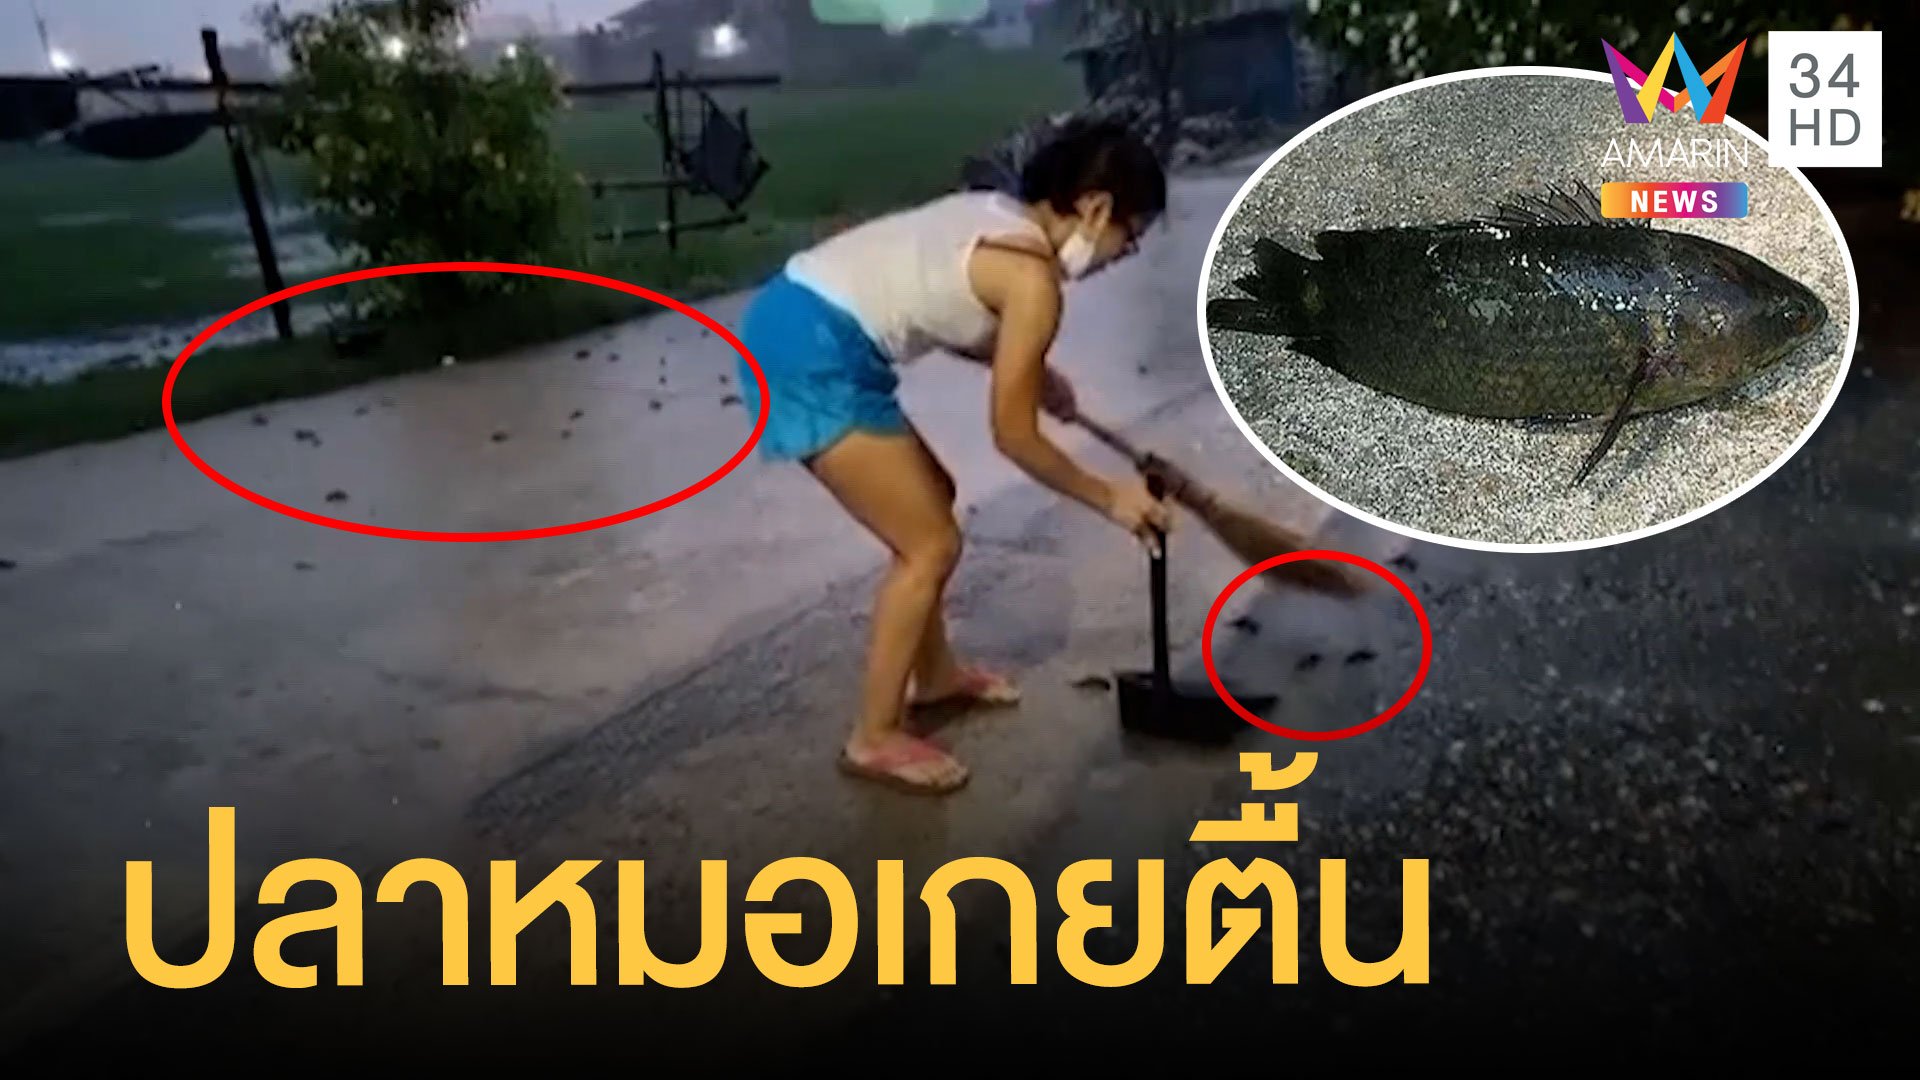 เคยเห็นมั้ย ปลาหมอเต็มถนนในวันที่ฝนตก | ข่าวอรุณอมรินทร์ | 22 ก.ค. 65 | AMARIN TVHD34